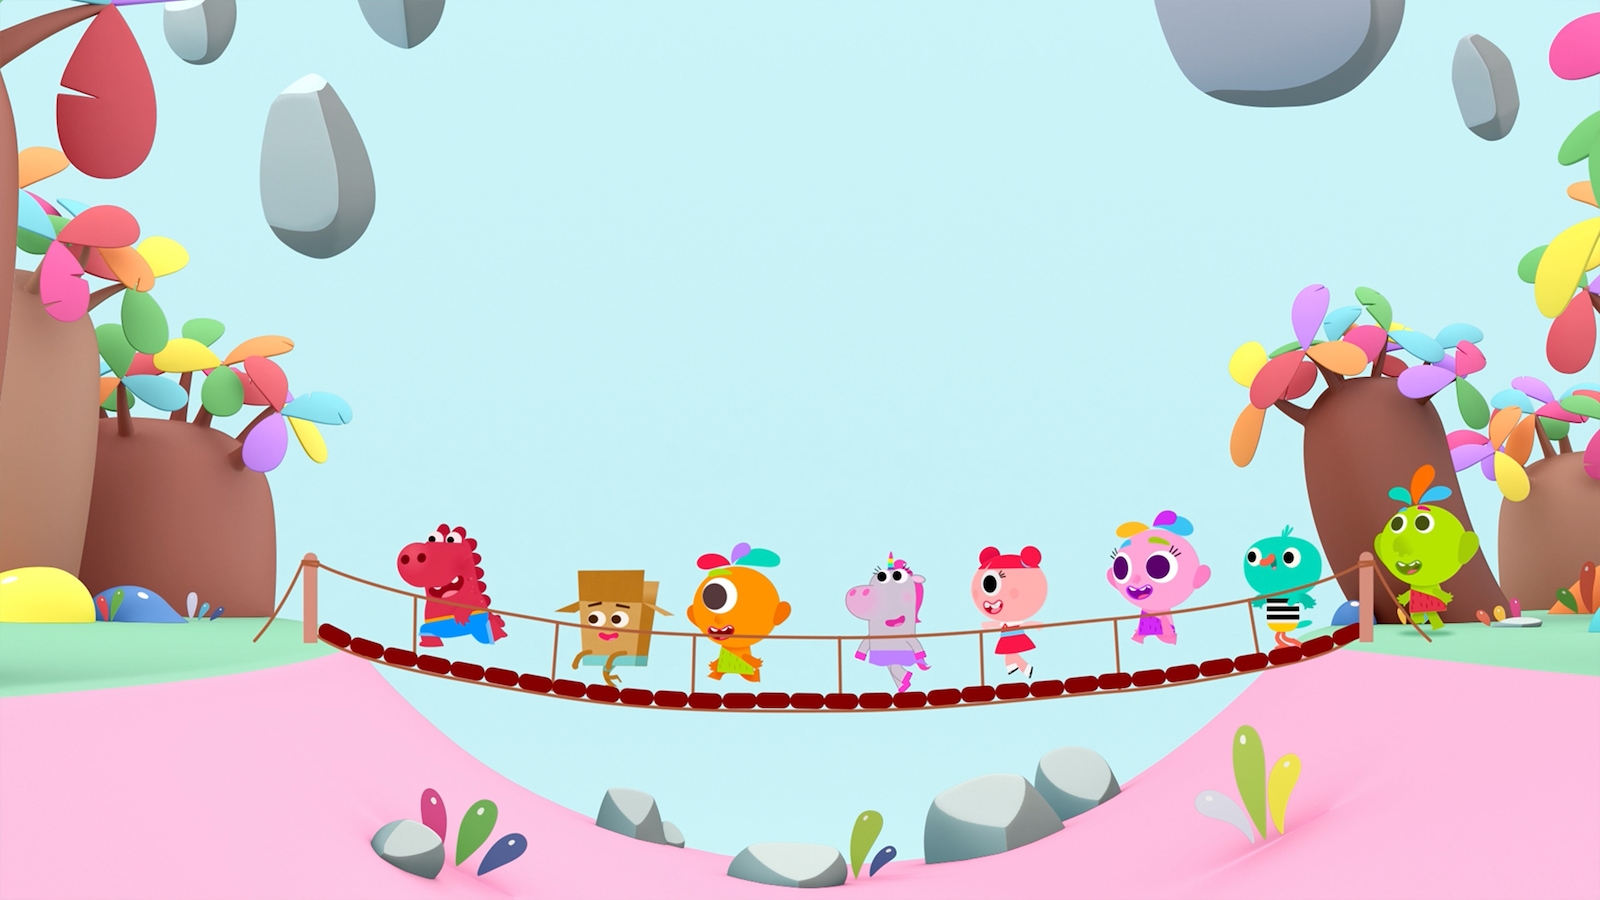 De petites créatures traversent sur un pont en bois.